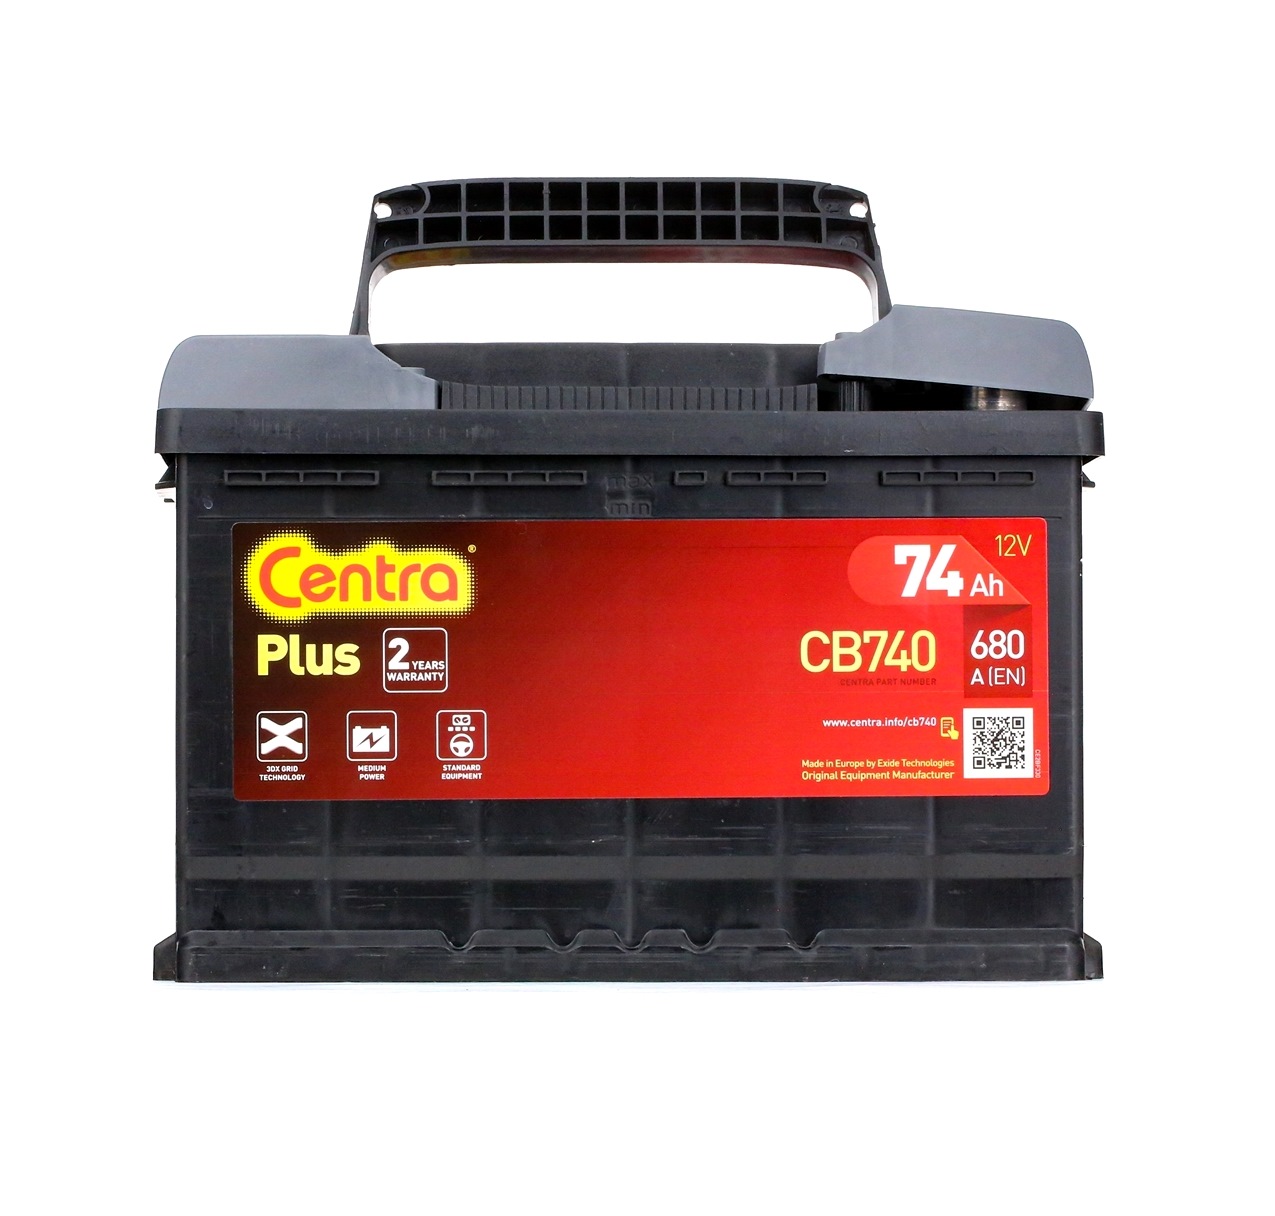 CB740 CENTRA Plus 12V 74Ah 680A B13 Akumulator kwasowo-ołowiowy Prąd zimnego rozruchu wg EN: 680A, Napięcie: 12V Akumulator CB740 kupić niedrogo